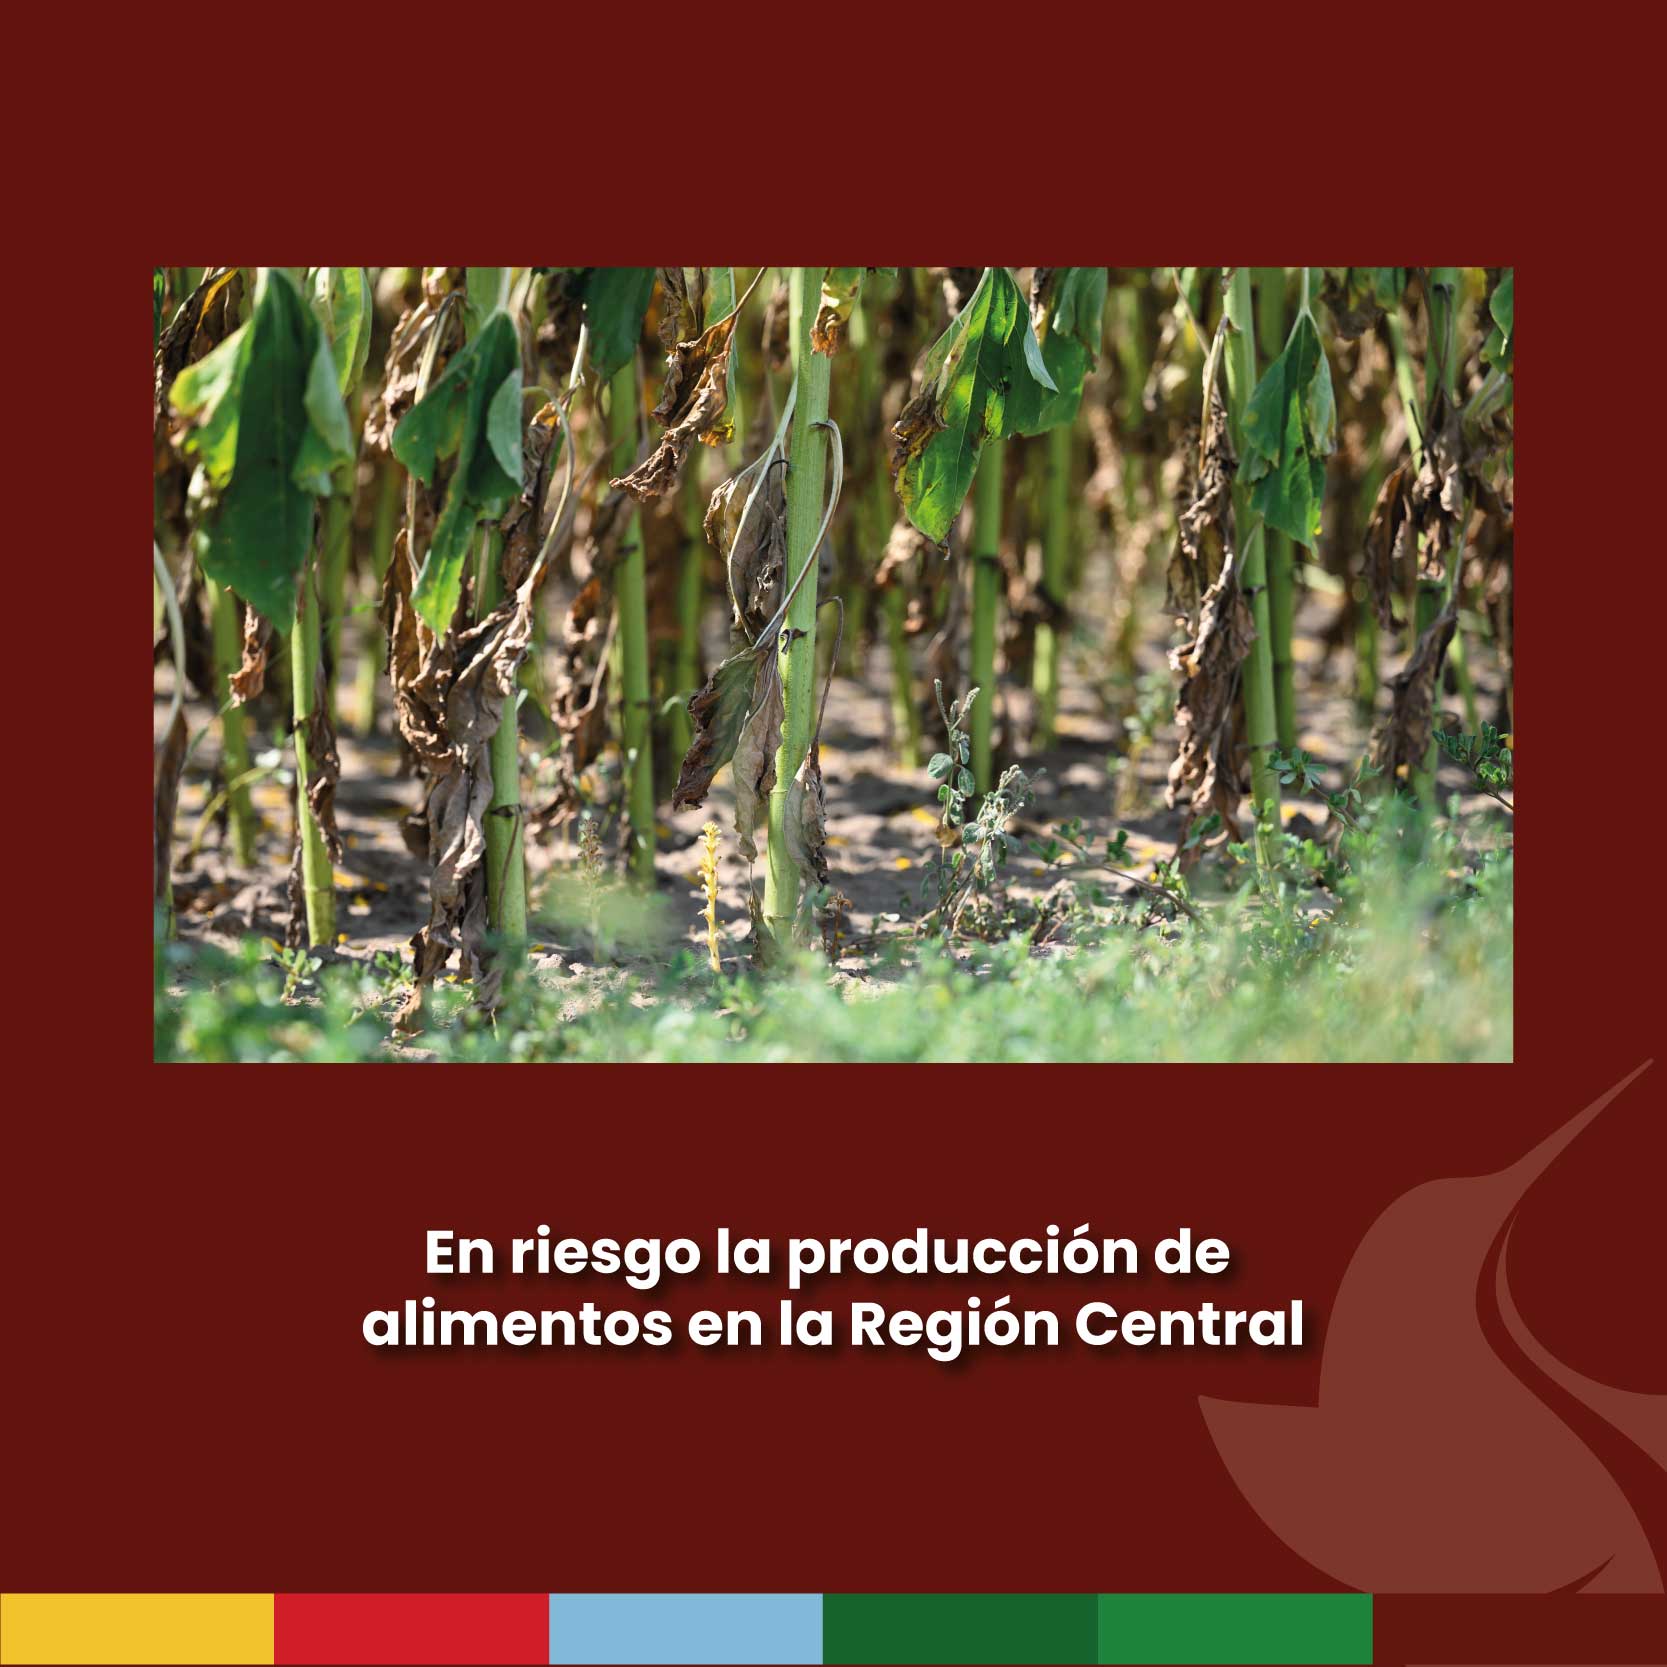 En riesgo la producción de alimentos en la Región Central